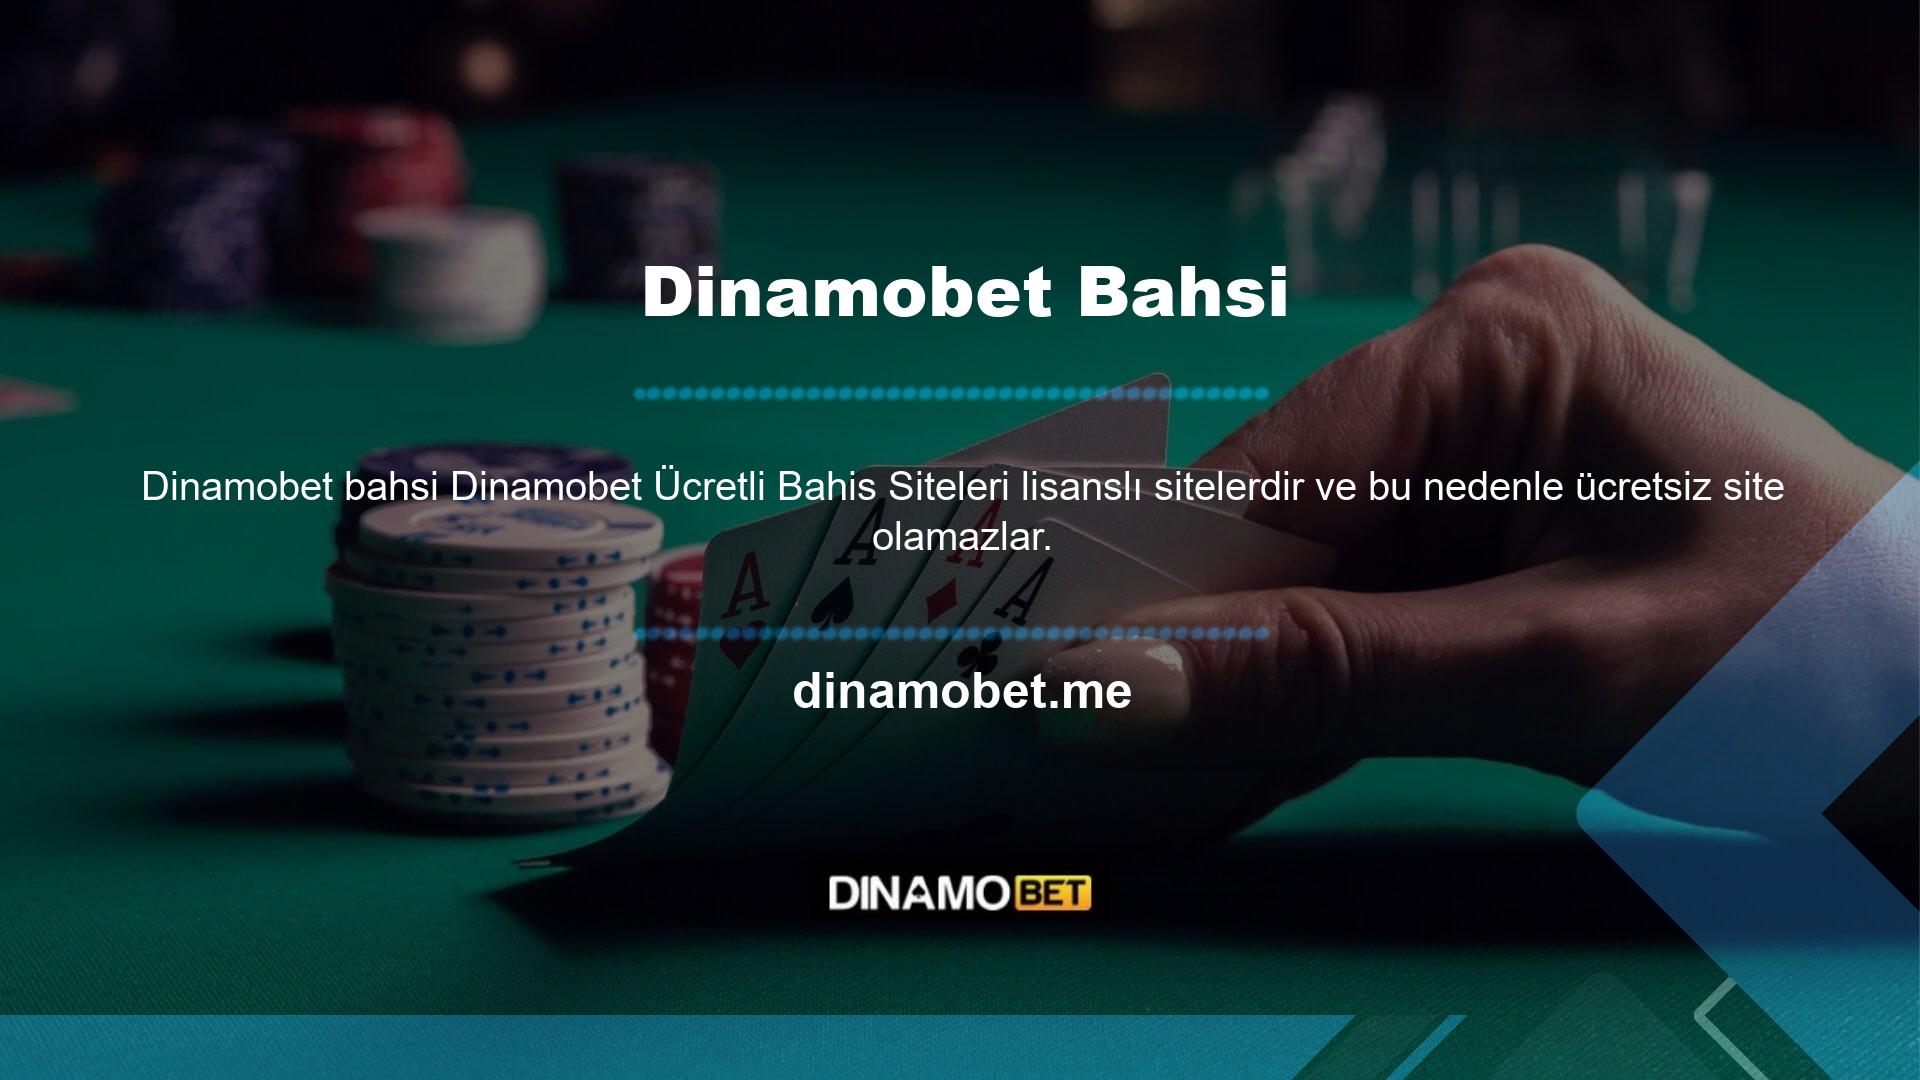 Dinamobet Bahis lisanslı bir site olması ödeme teknolojisinin kesintisiz çalışmasını sağlar